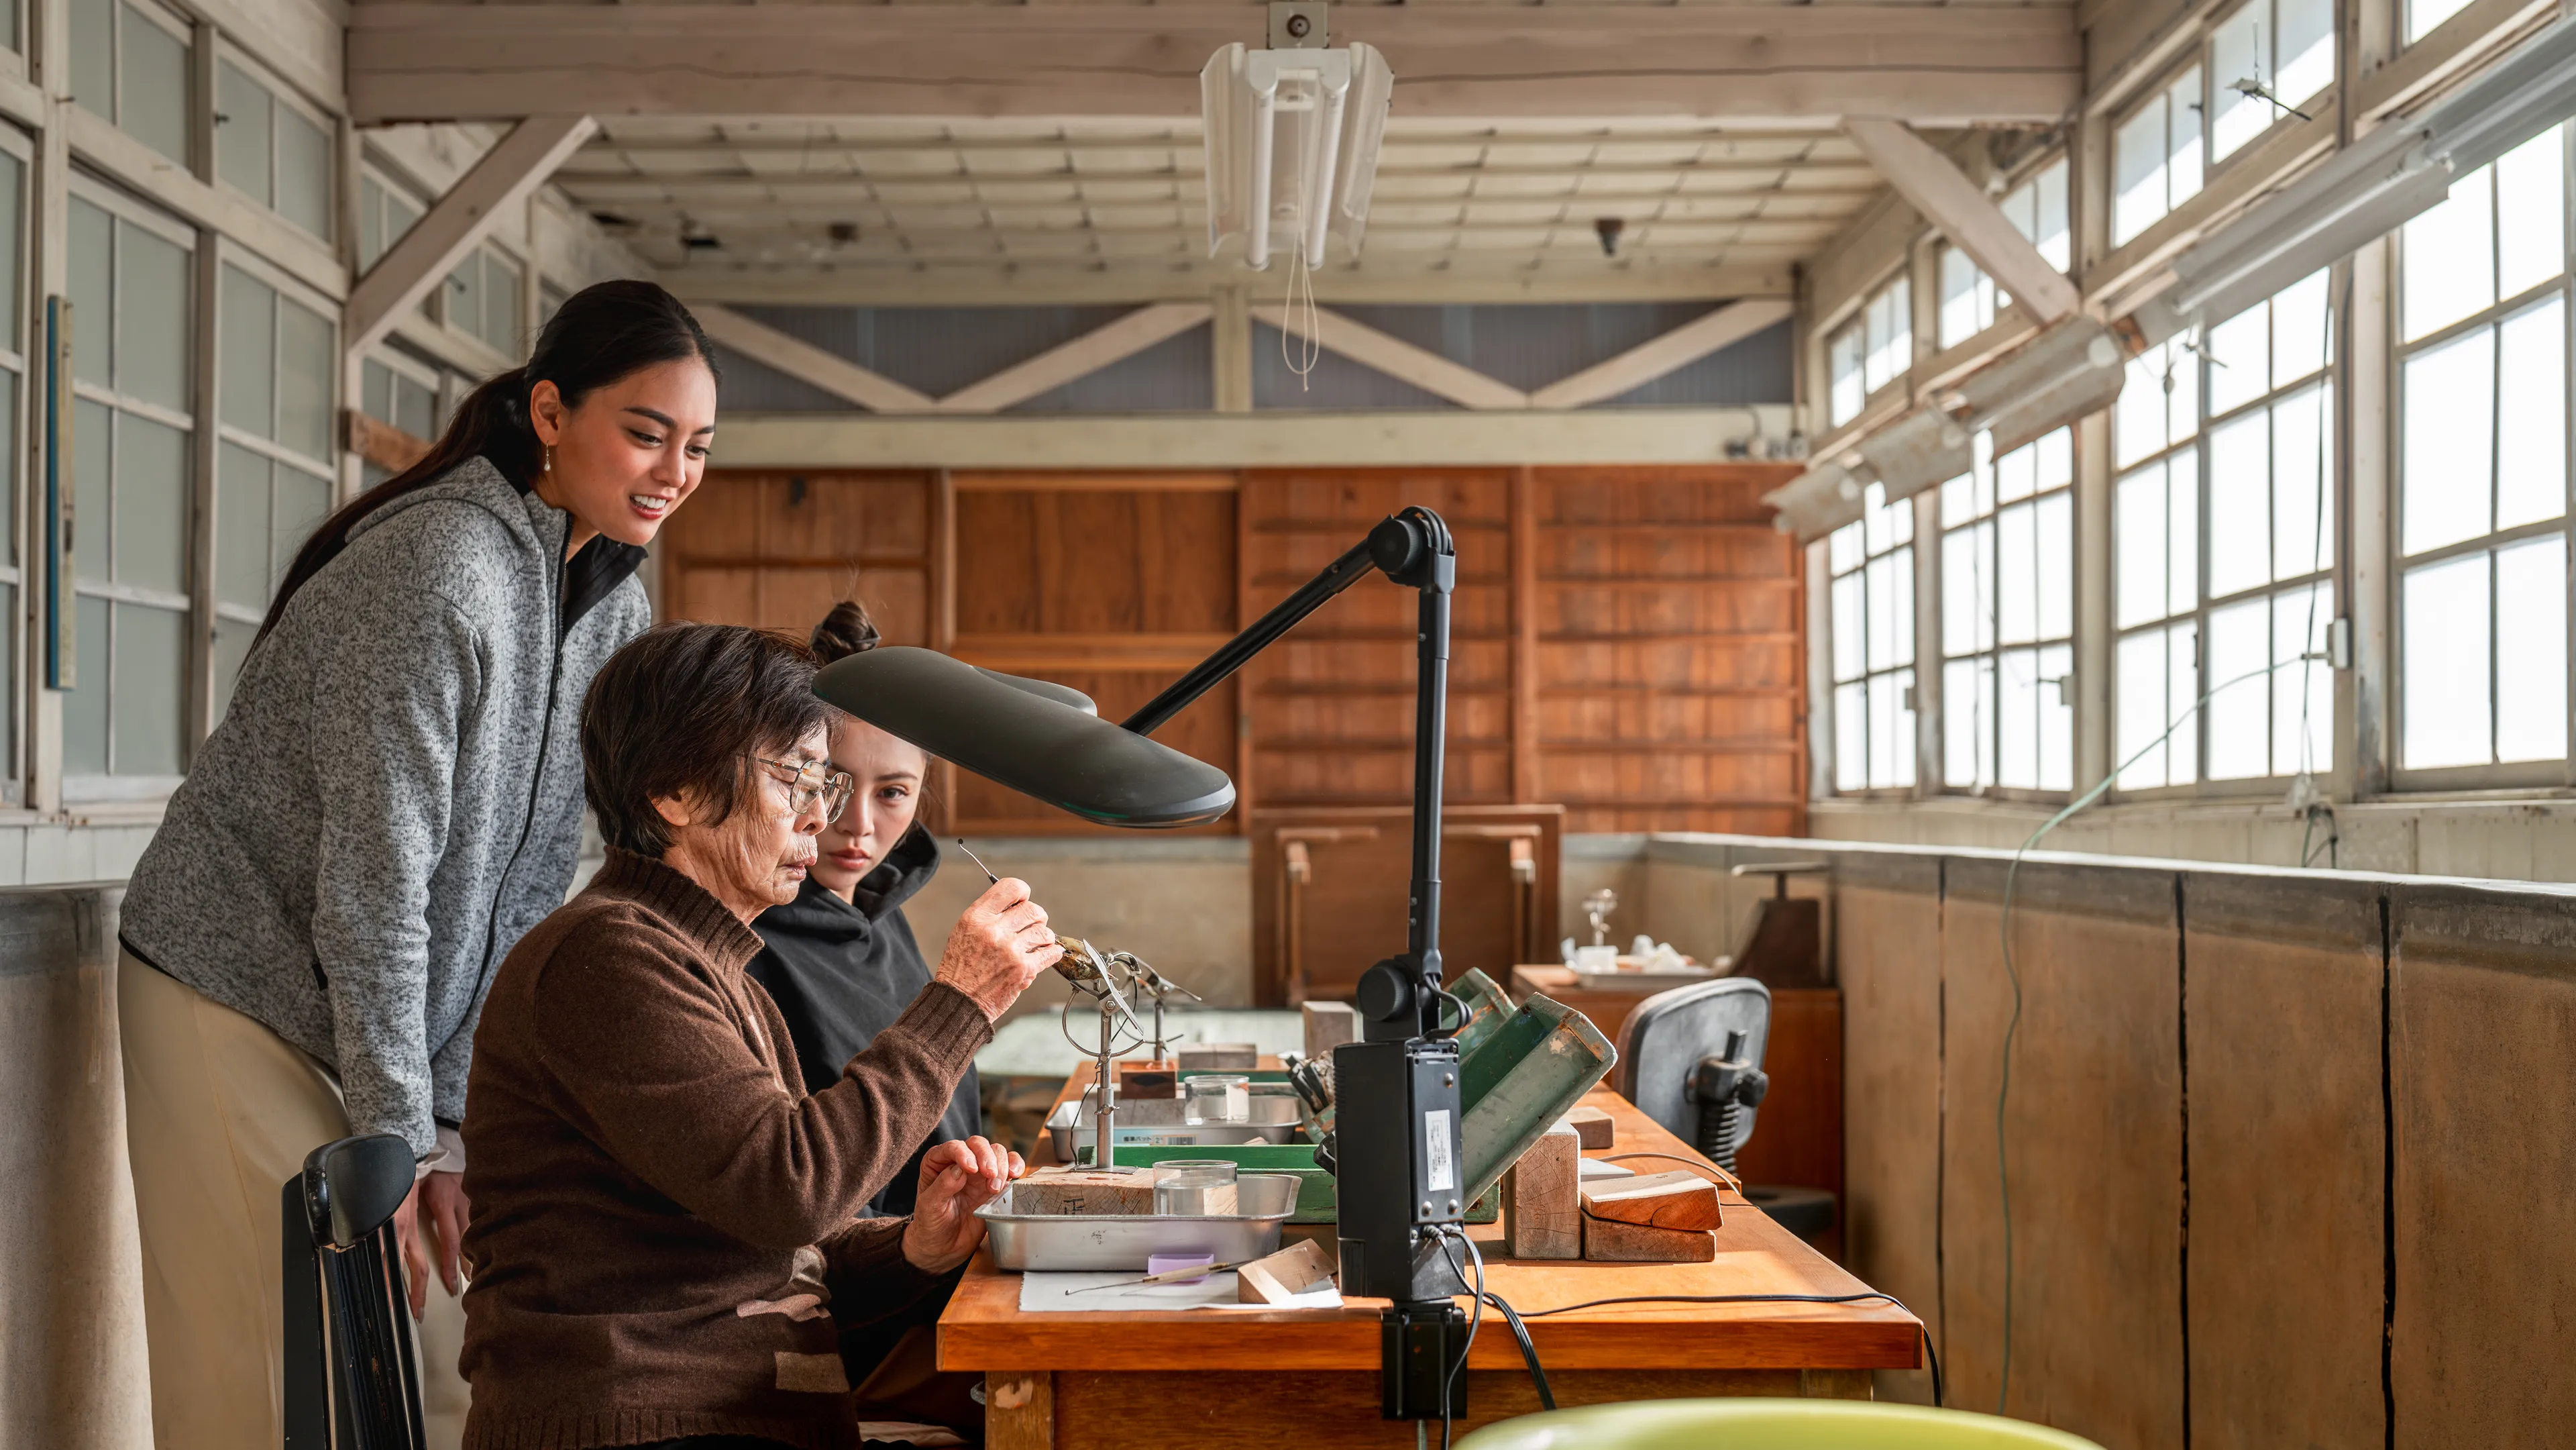 ประสบการณ์เครื่องประดับไข่มุกอันเป็นเอกลักษณ์ที่ Pearl Miki ค้นพบและเรียนรู้วัฒนธรรมไข่มุกในอิเซะชิมะ